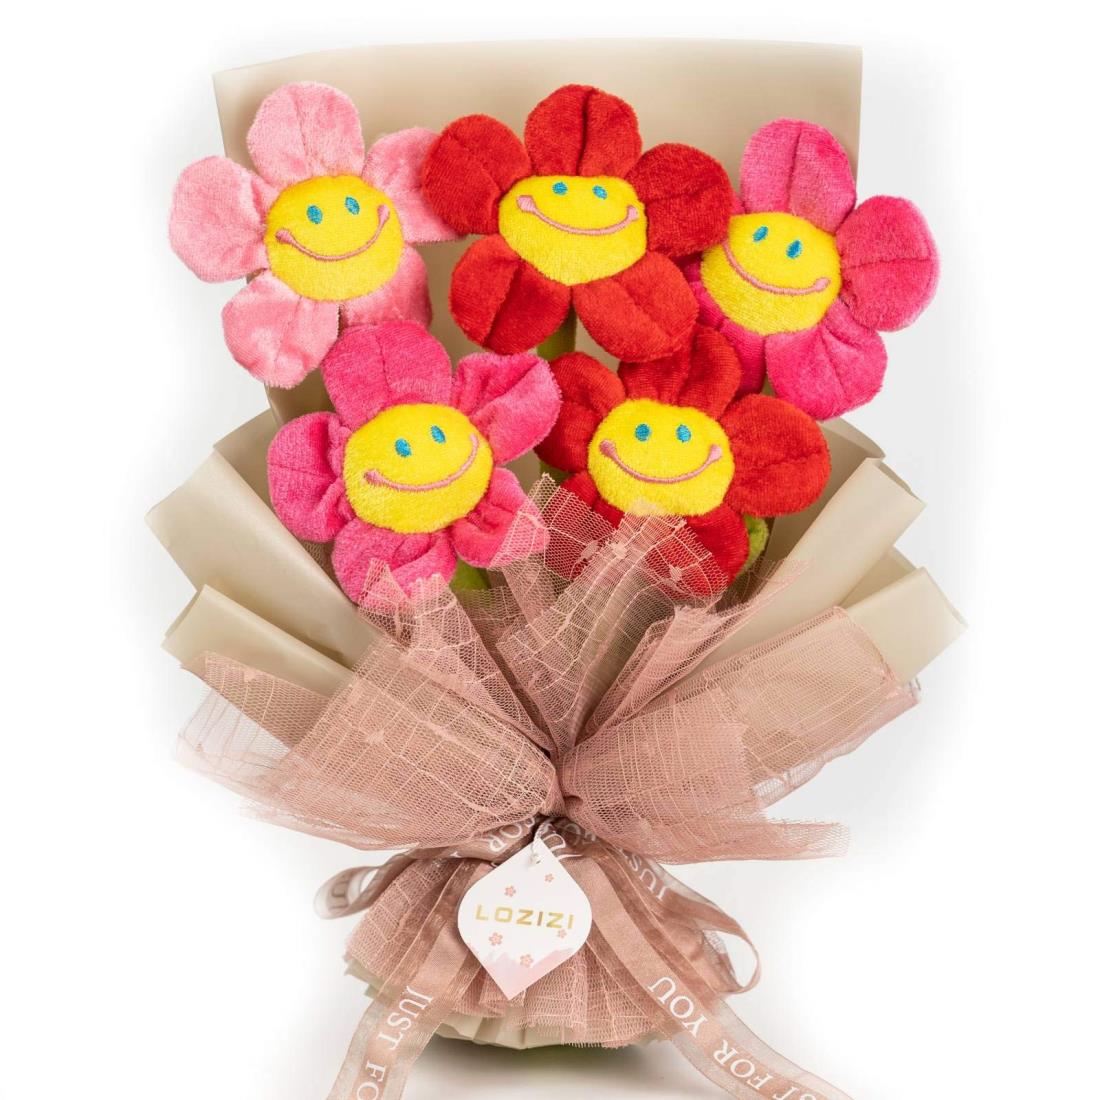 LOZIZI スマイルフラワー 韓国 ぬいぐるみ花束 ブーケ 枯れない花 花 フラワーブーケ 造花 贈り物 ギフト お見舞い プレゼント 誕生日 記念日 母の日 女性 彼女 友達 お祝い メッセージカード付き (Red)